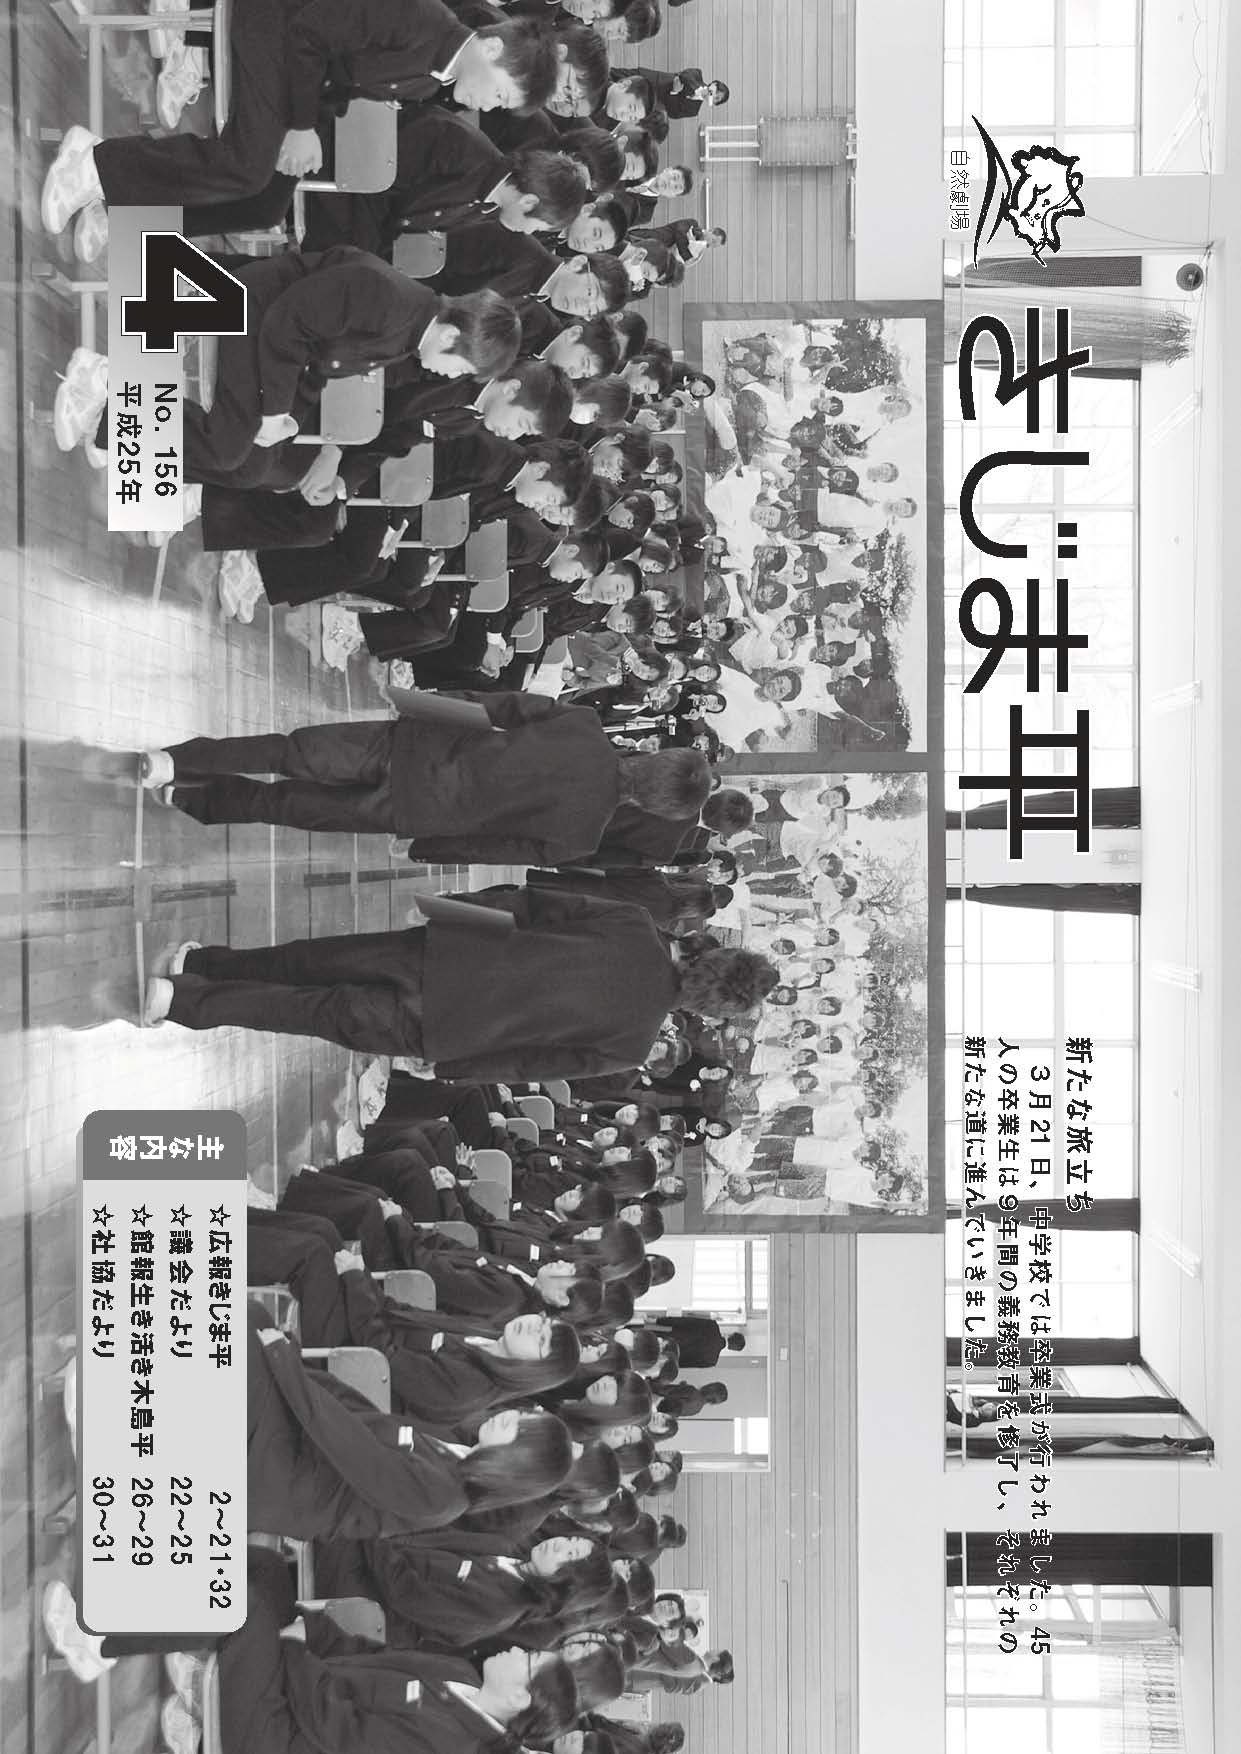 木島平中学校で行われた卒業式の様子